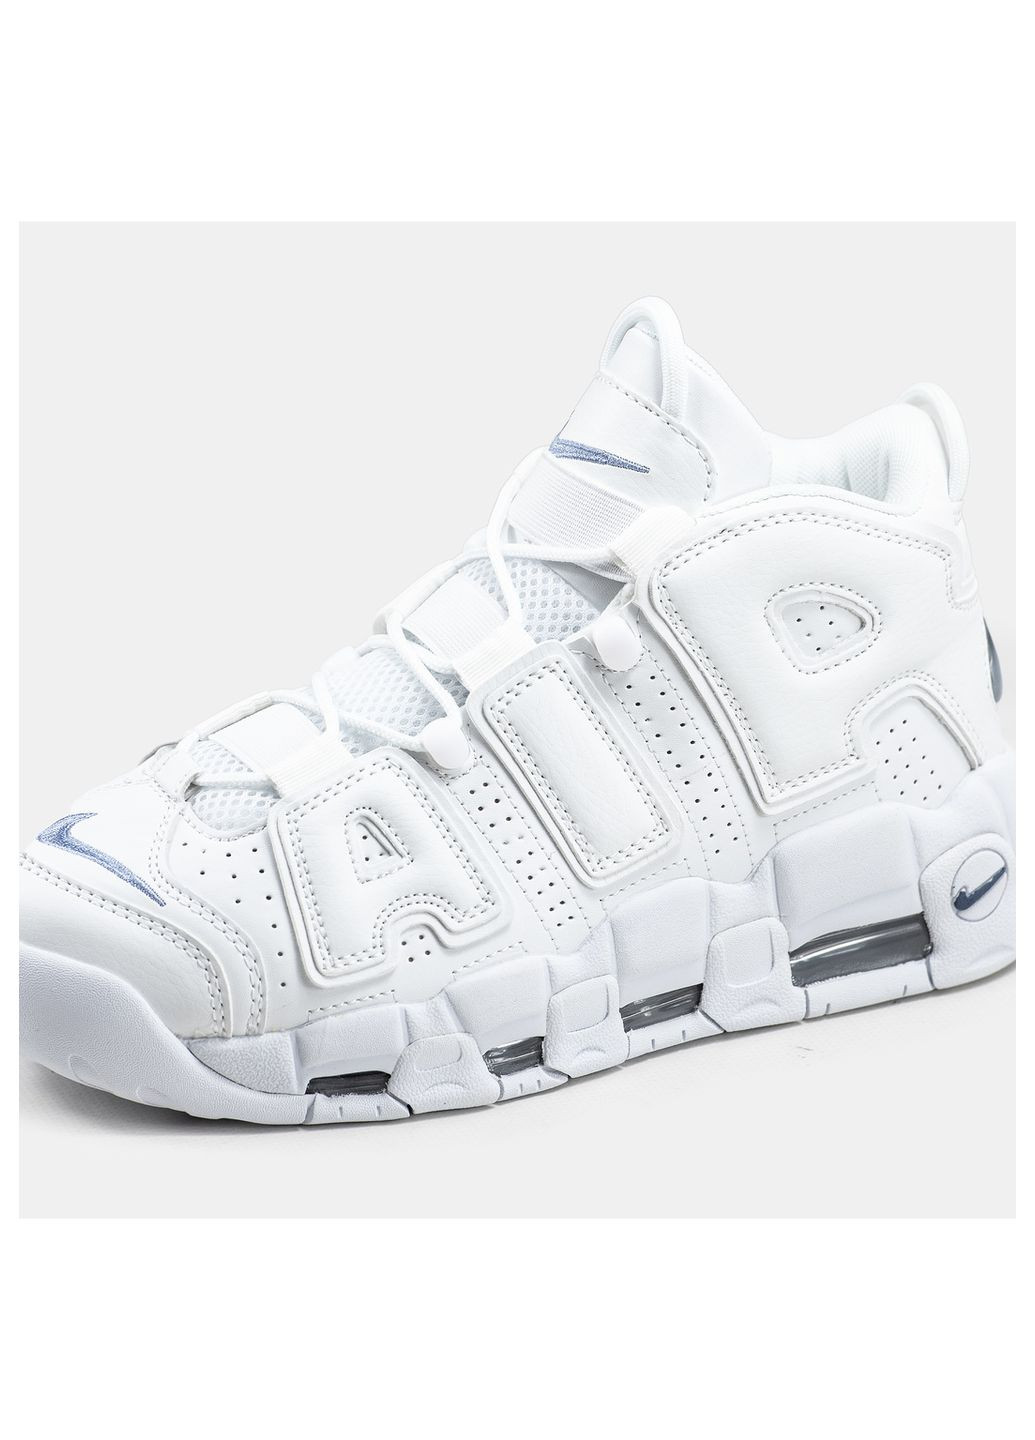 Белые демисезонные кроссовки мужские Nike Uptempo White